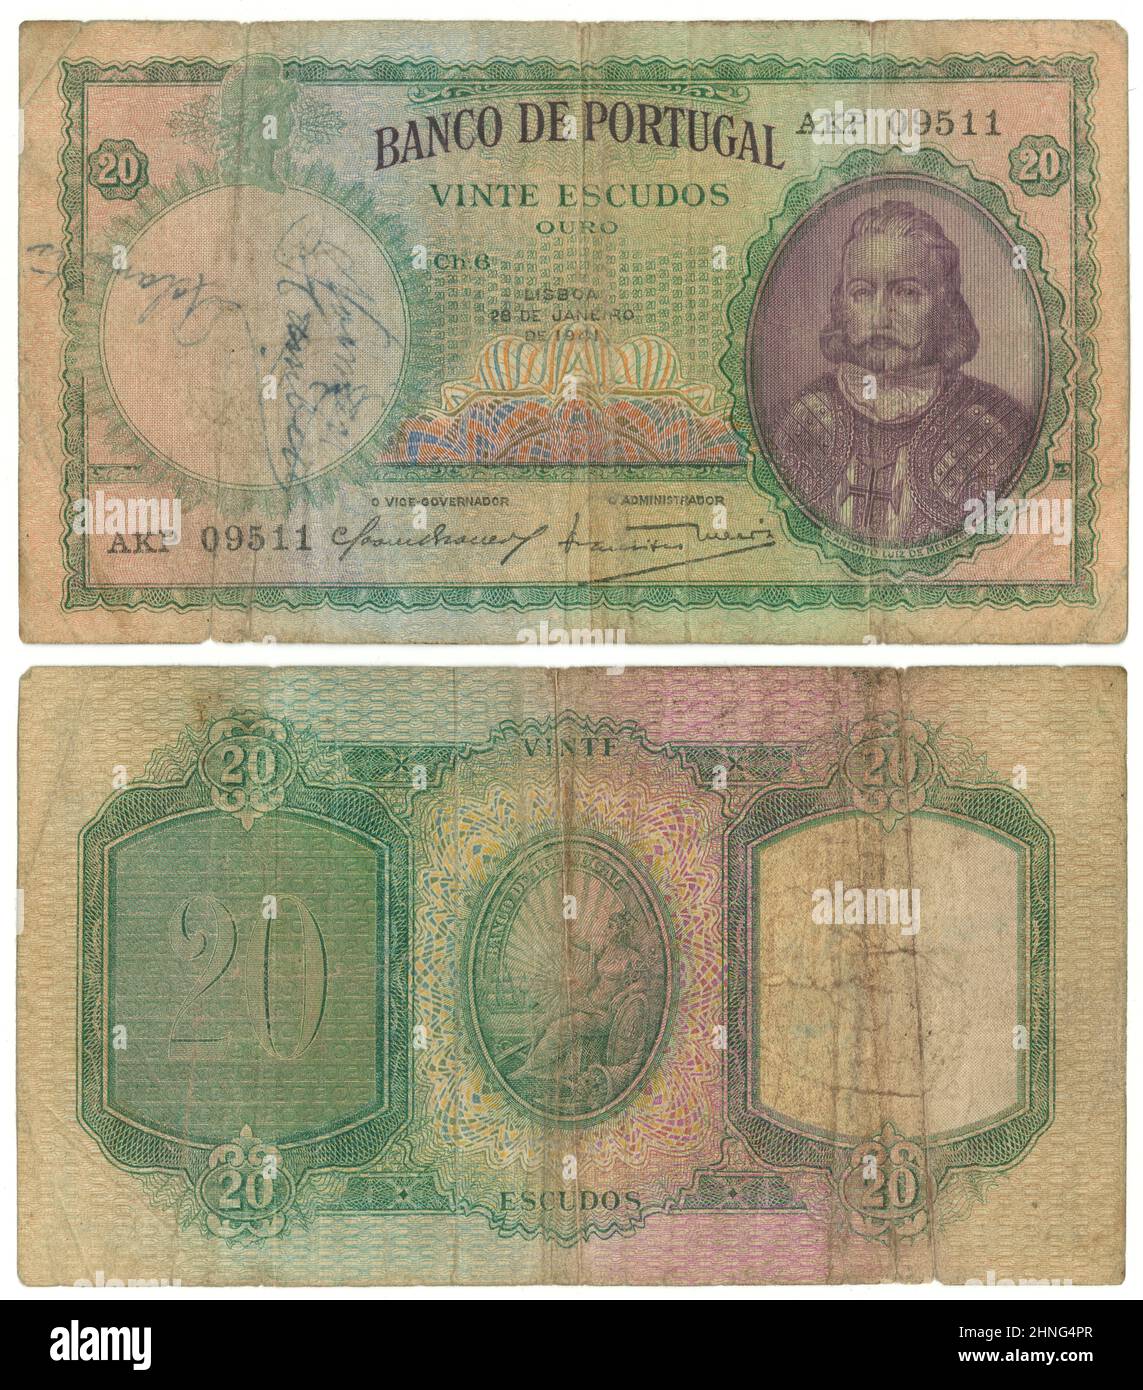 1941, Veinte Escudos nota, Portugal, anverso y reverso. Tamaño real: 135mm x 75mm. Foto de stock